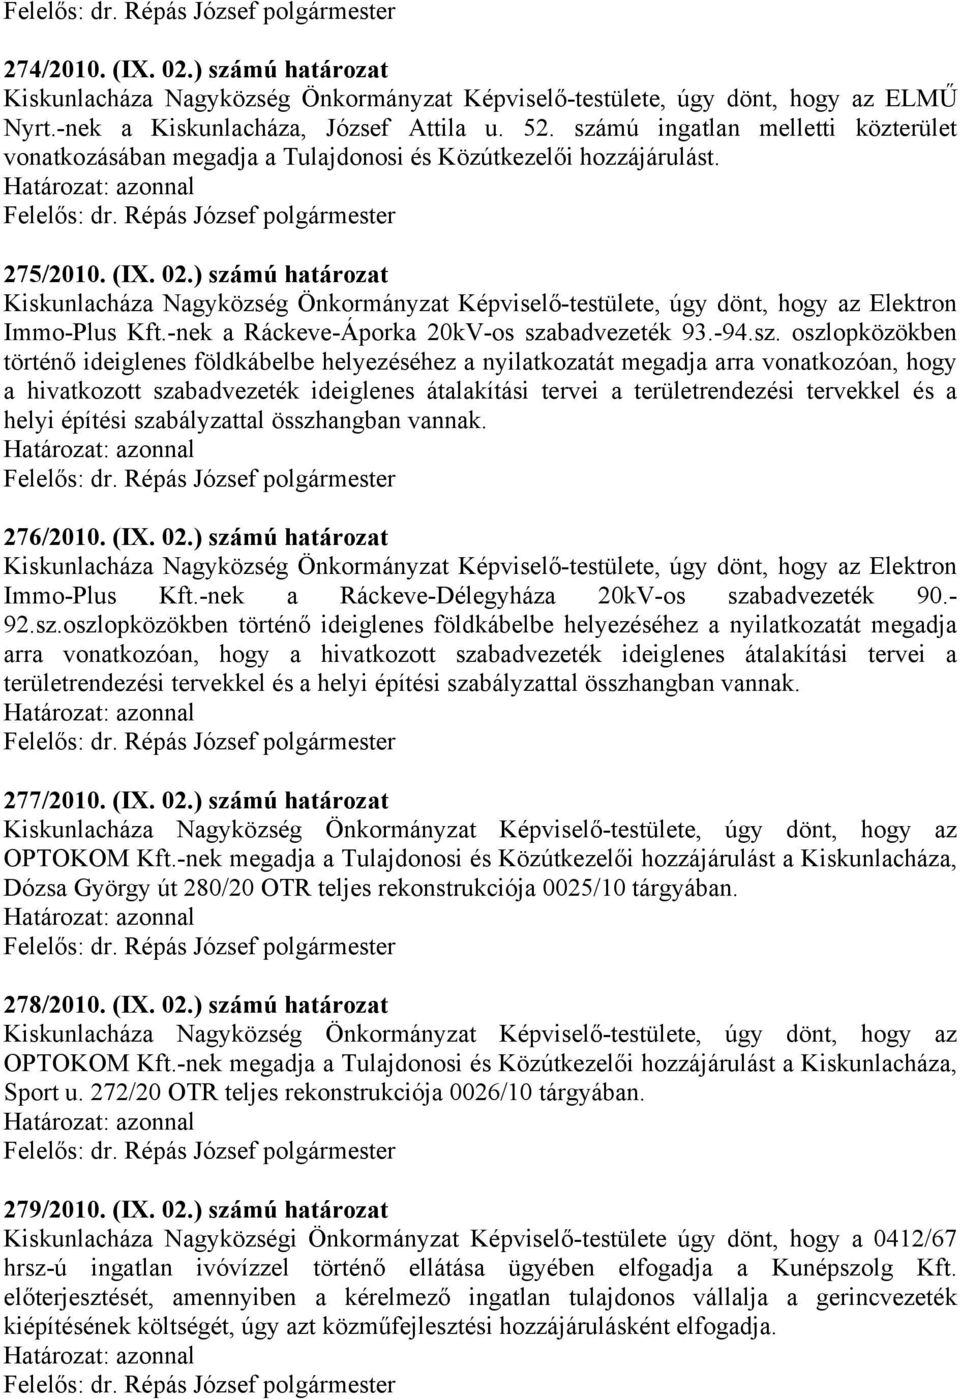 ) számú határozat Kiskunlacháza Nagyközség Önkormányzat Képviselő-testülete, úgy dönt, hogy az Elektron Immo-Plus Kft.-nek a Ráckeve-Áporka 20kV-os szabadvezeték 93.-94.sz. oszlopközökben történő